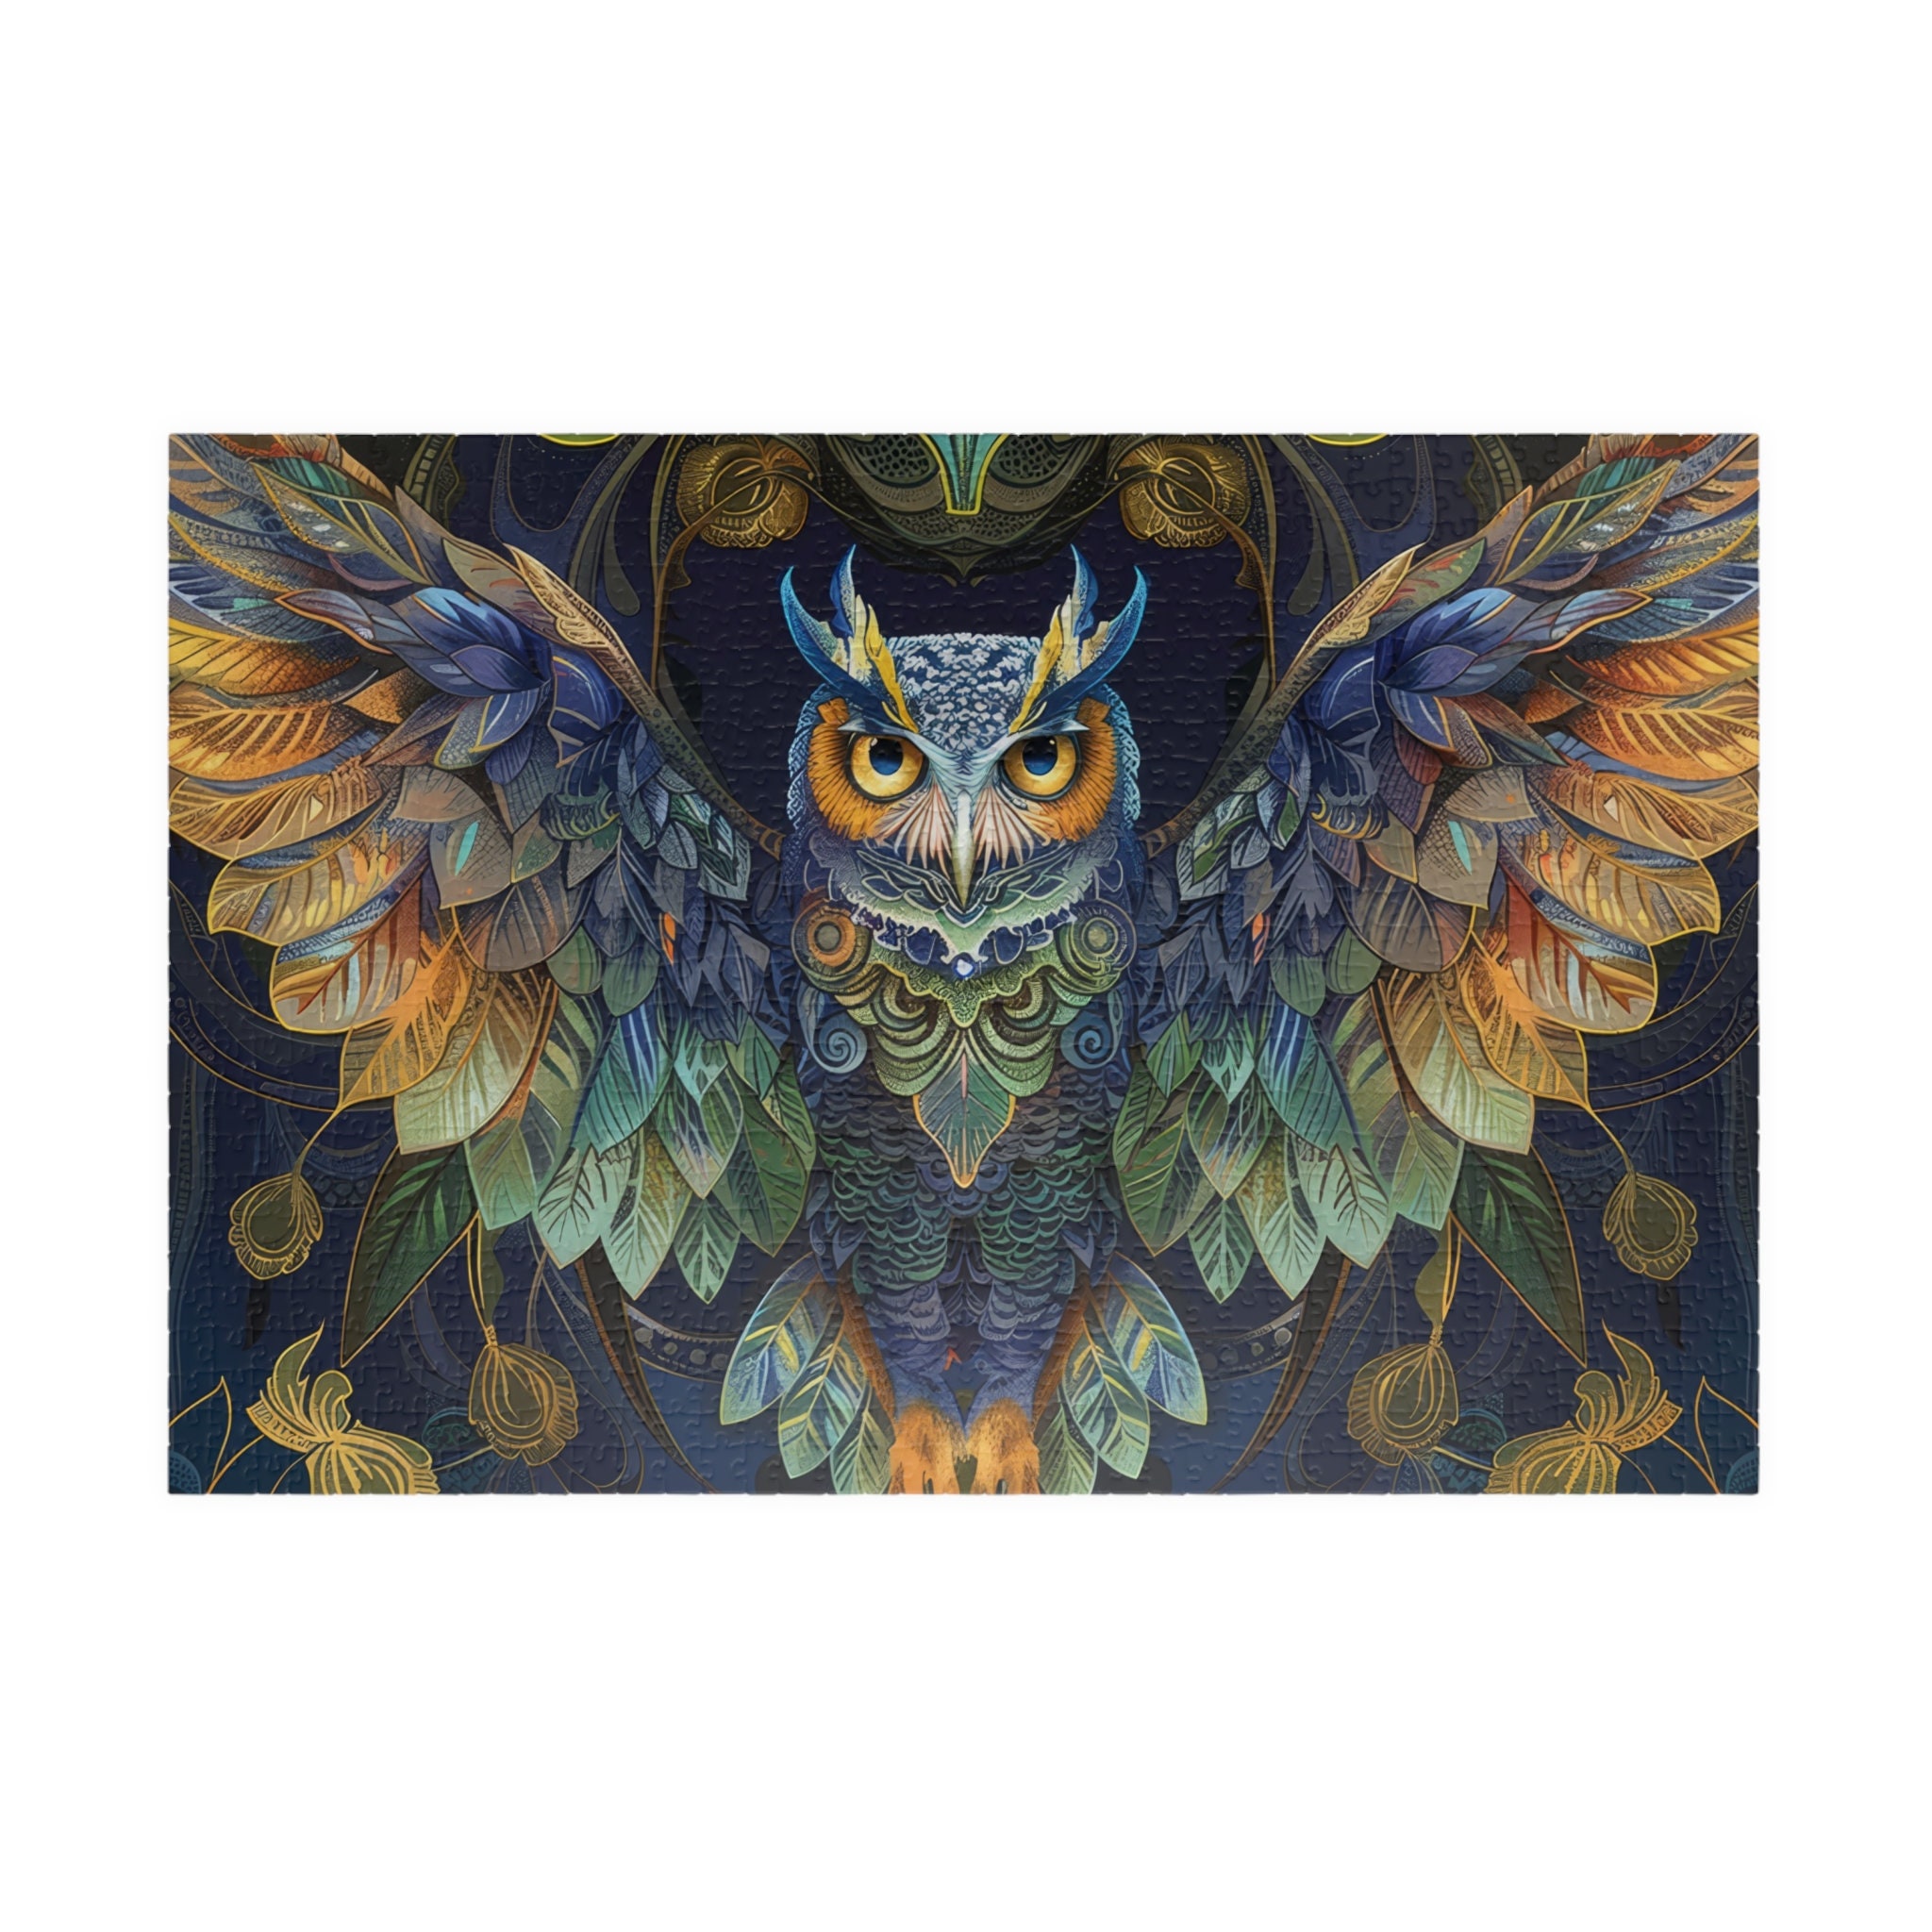 Nouveau Art Style Owl Puzzle in 110, 252, 520, or 1014 pieces, 1000 Pieces, Unique, Jigsaw, Family, 